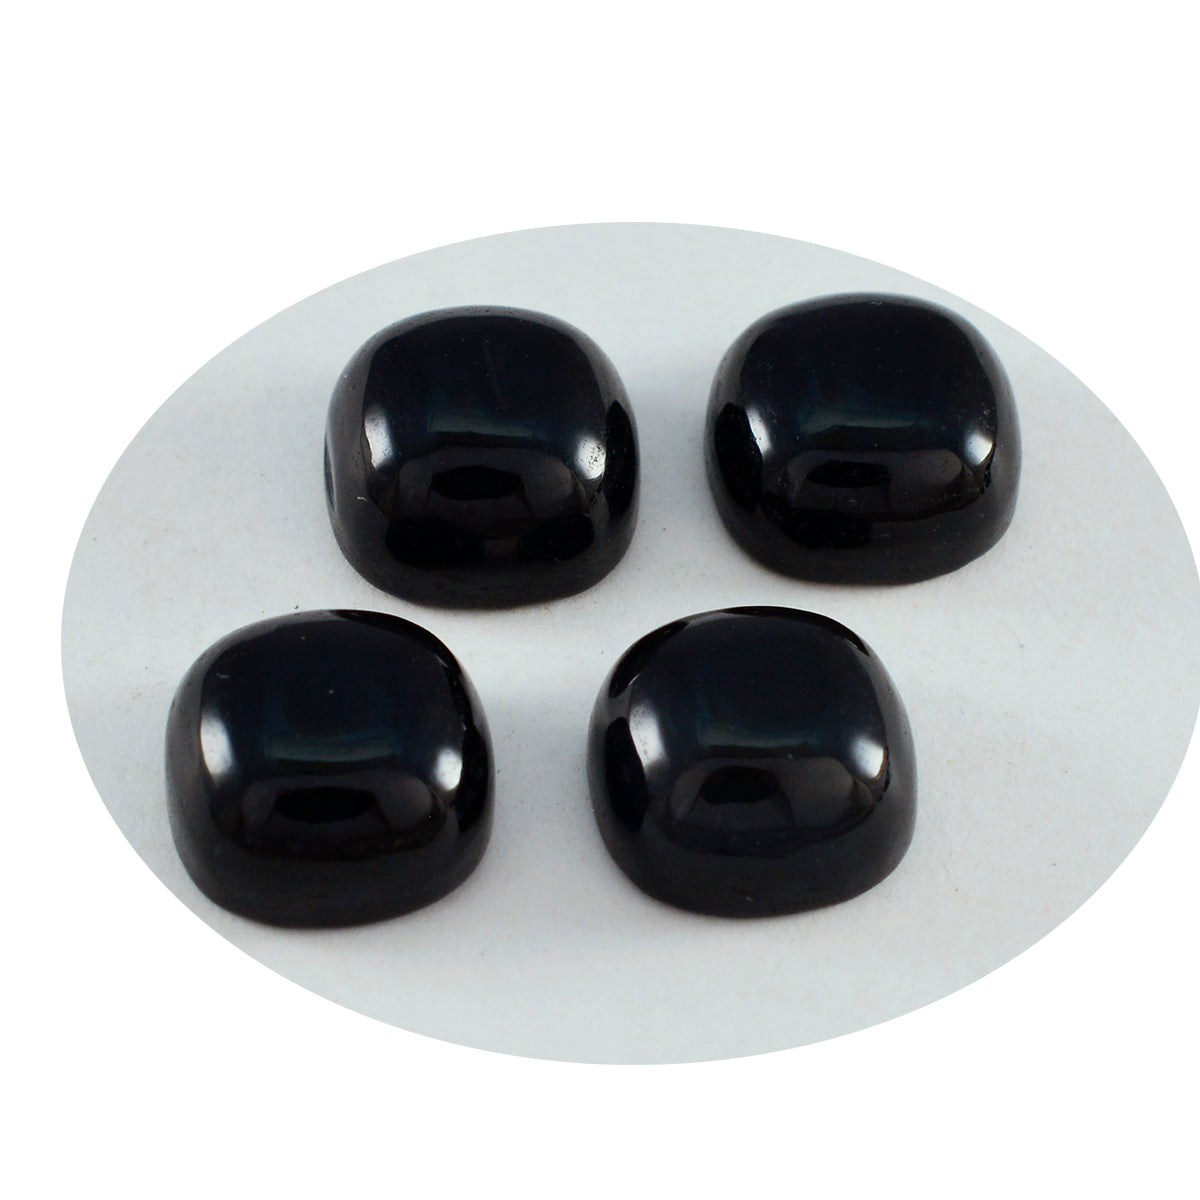 Riyogems 1 pieza cabujón de ónix negro 8x8mm forma de cojín hermosa gema de calidad